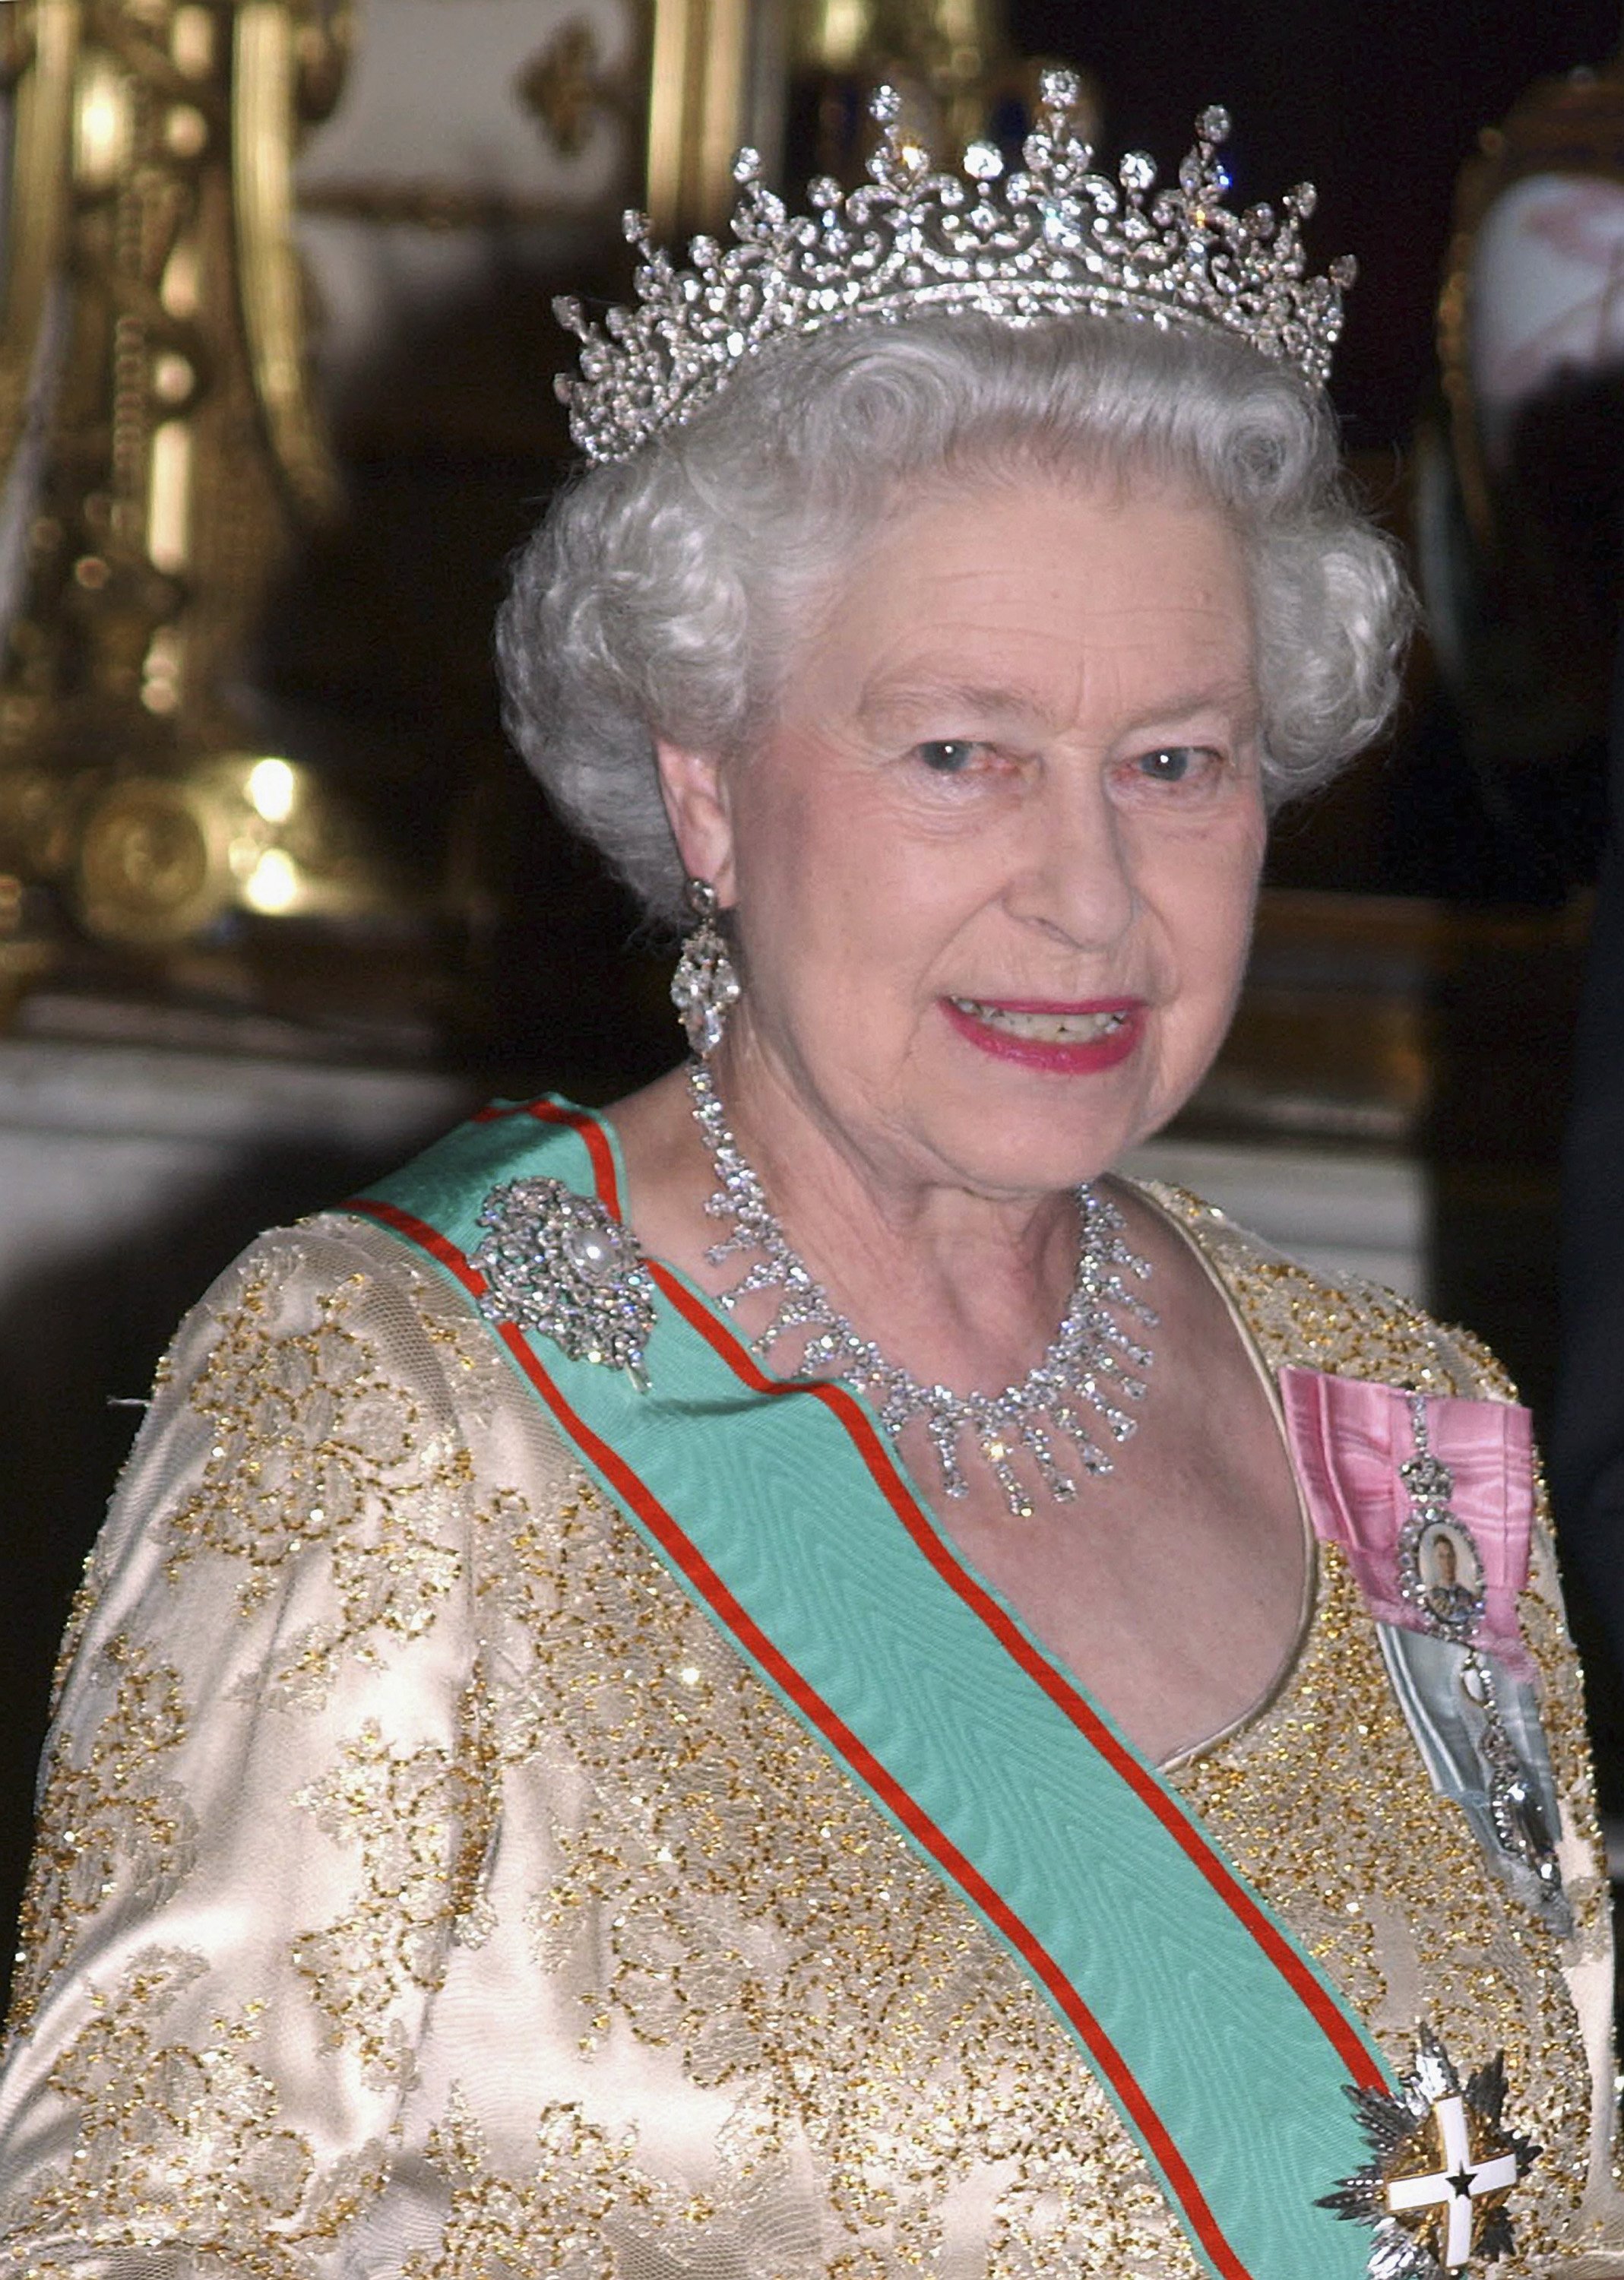 La reina Elizabeth II en el Palacio de Buckingham, el 15 de marzo de 2005 en Londres, Inglaterra. | Foto: Getty Images